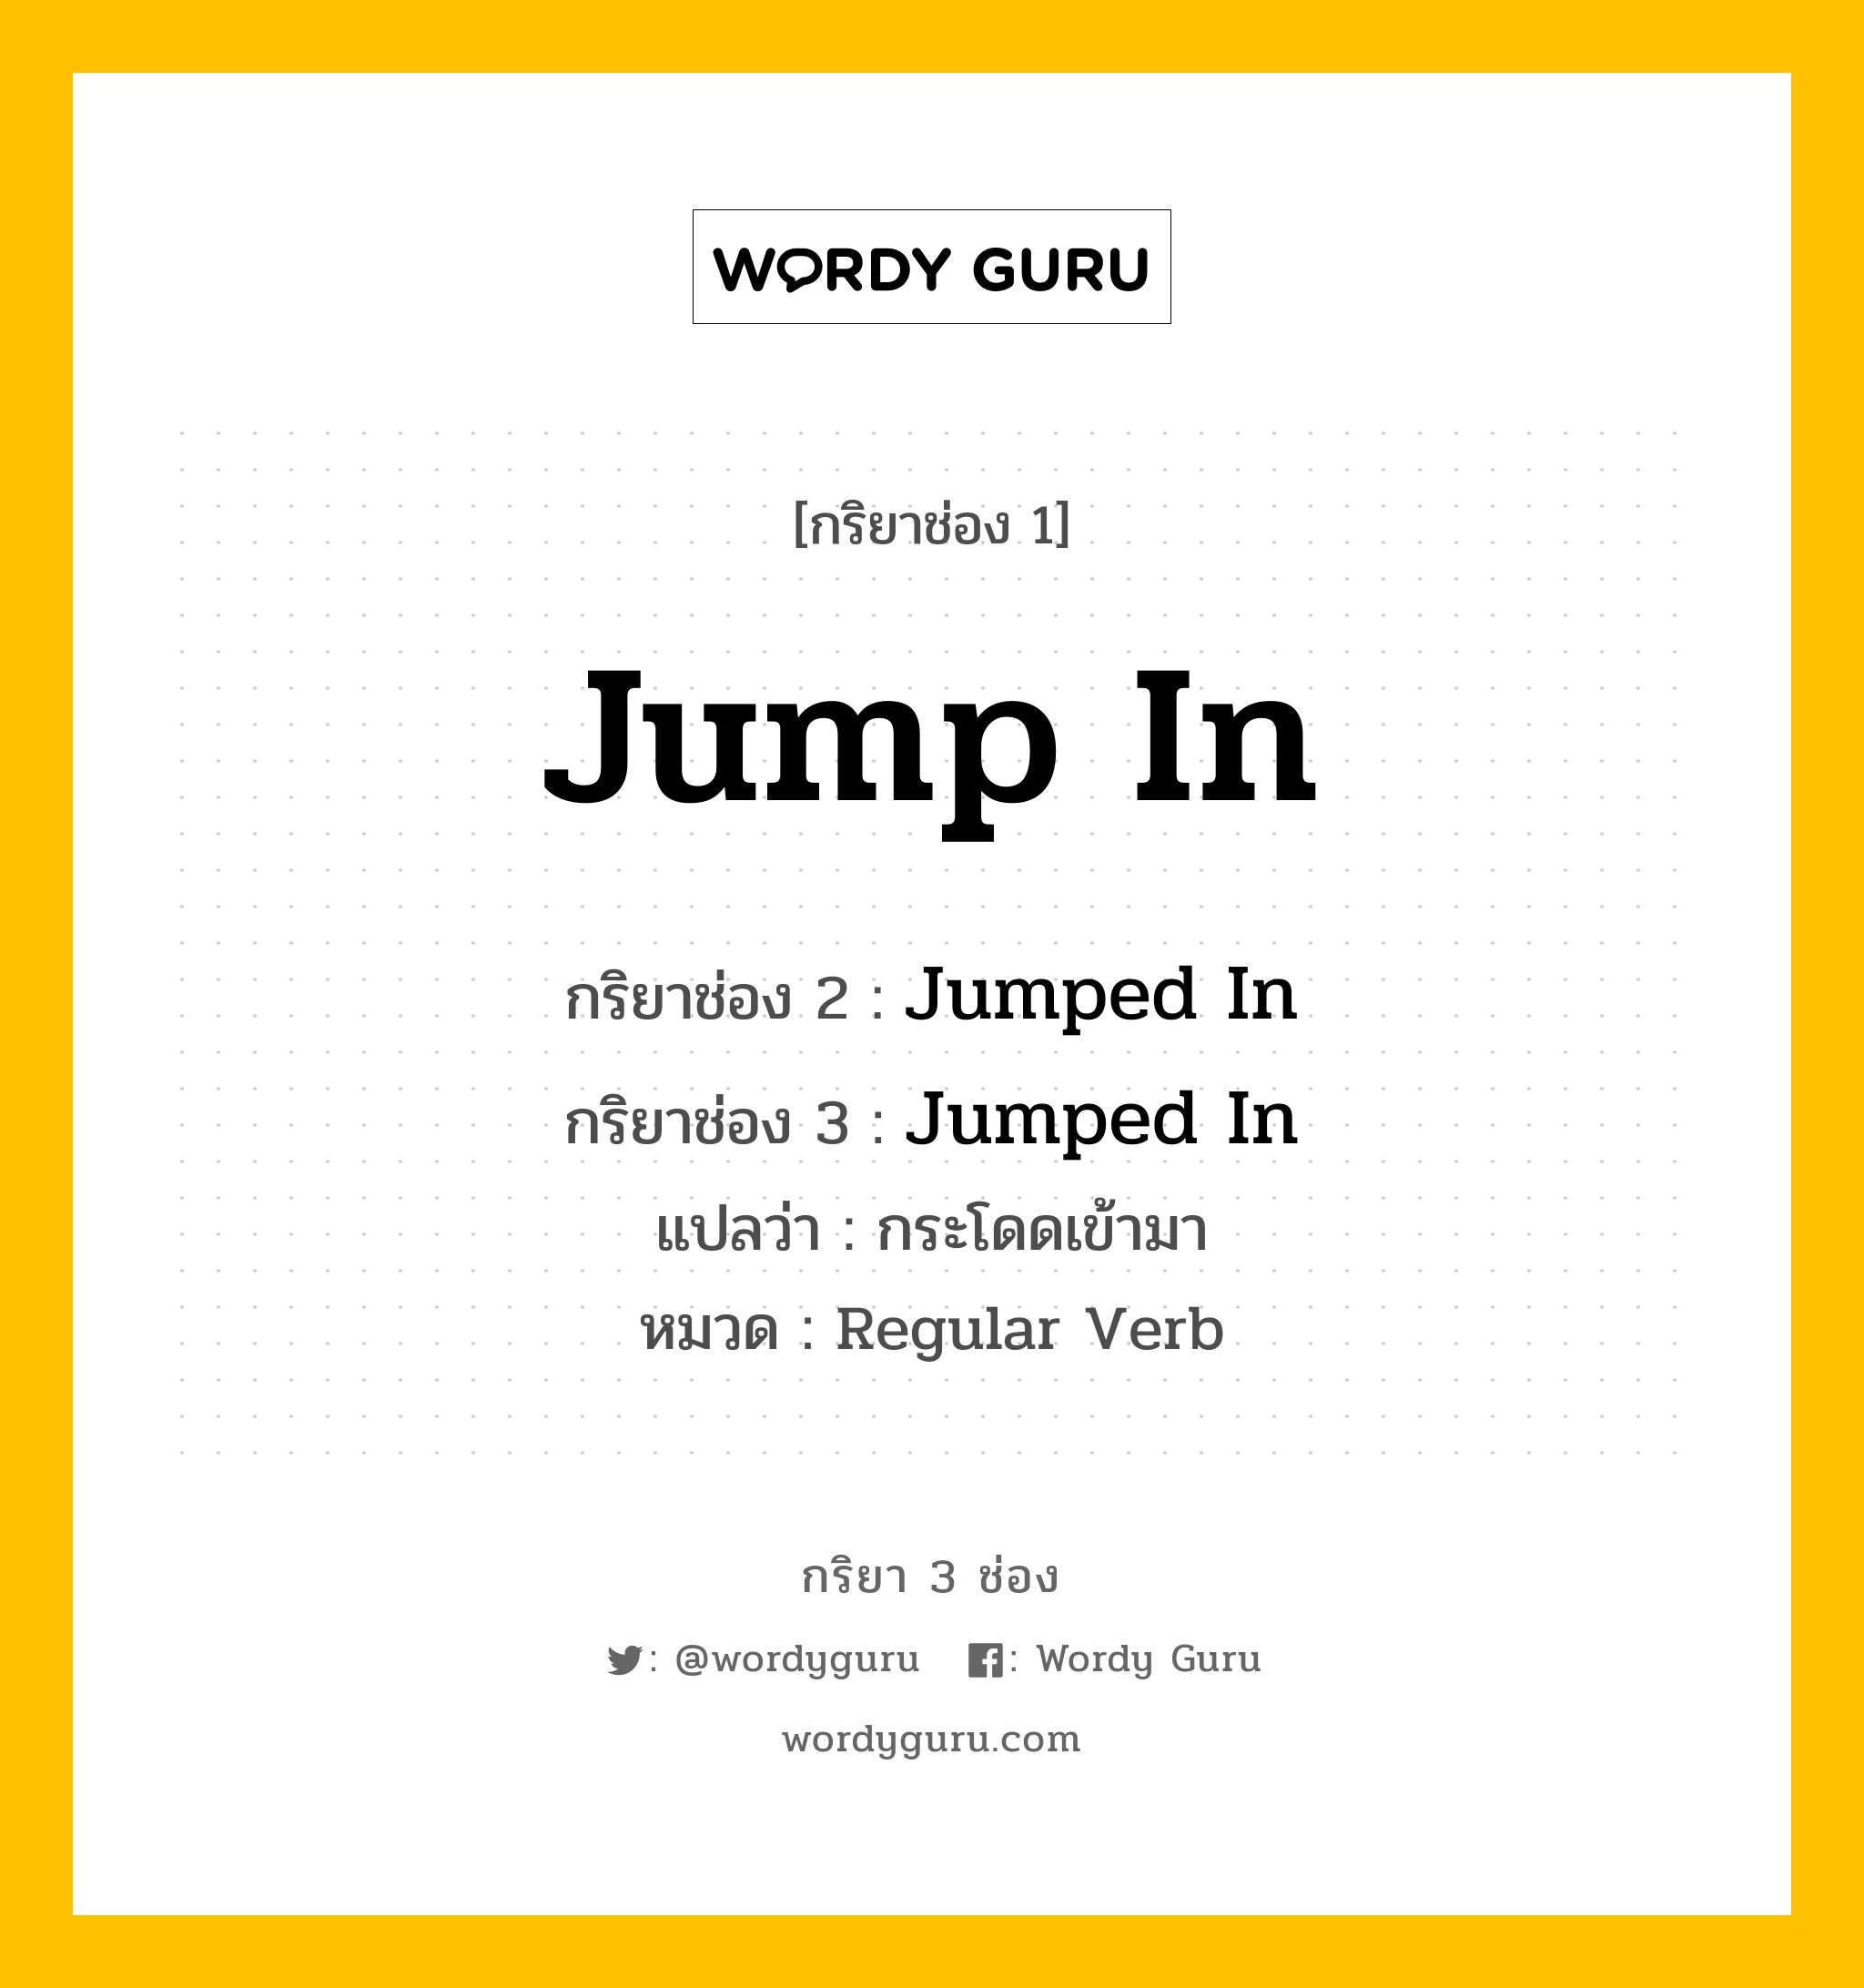 กริยา 3 ช่อง: Jump In ช่อง 2 Jump In ช่อง 3 คืออะไร, กริยาช่อง 1 Jump In กริยาช่อง 2 Jumped In กริยาช่อง 3 Jumped In แปลว่า กระโดดเข้ามา หมวด Regular Verb หมวด Regular Verb